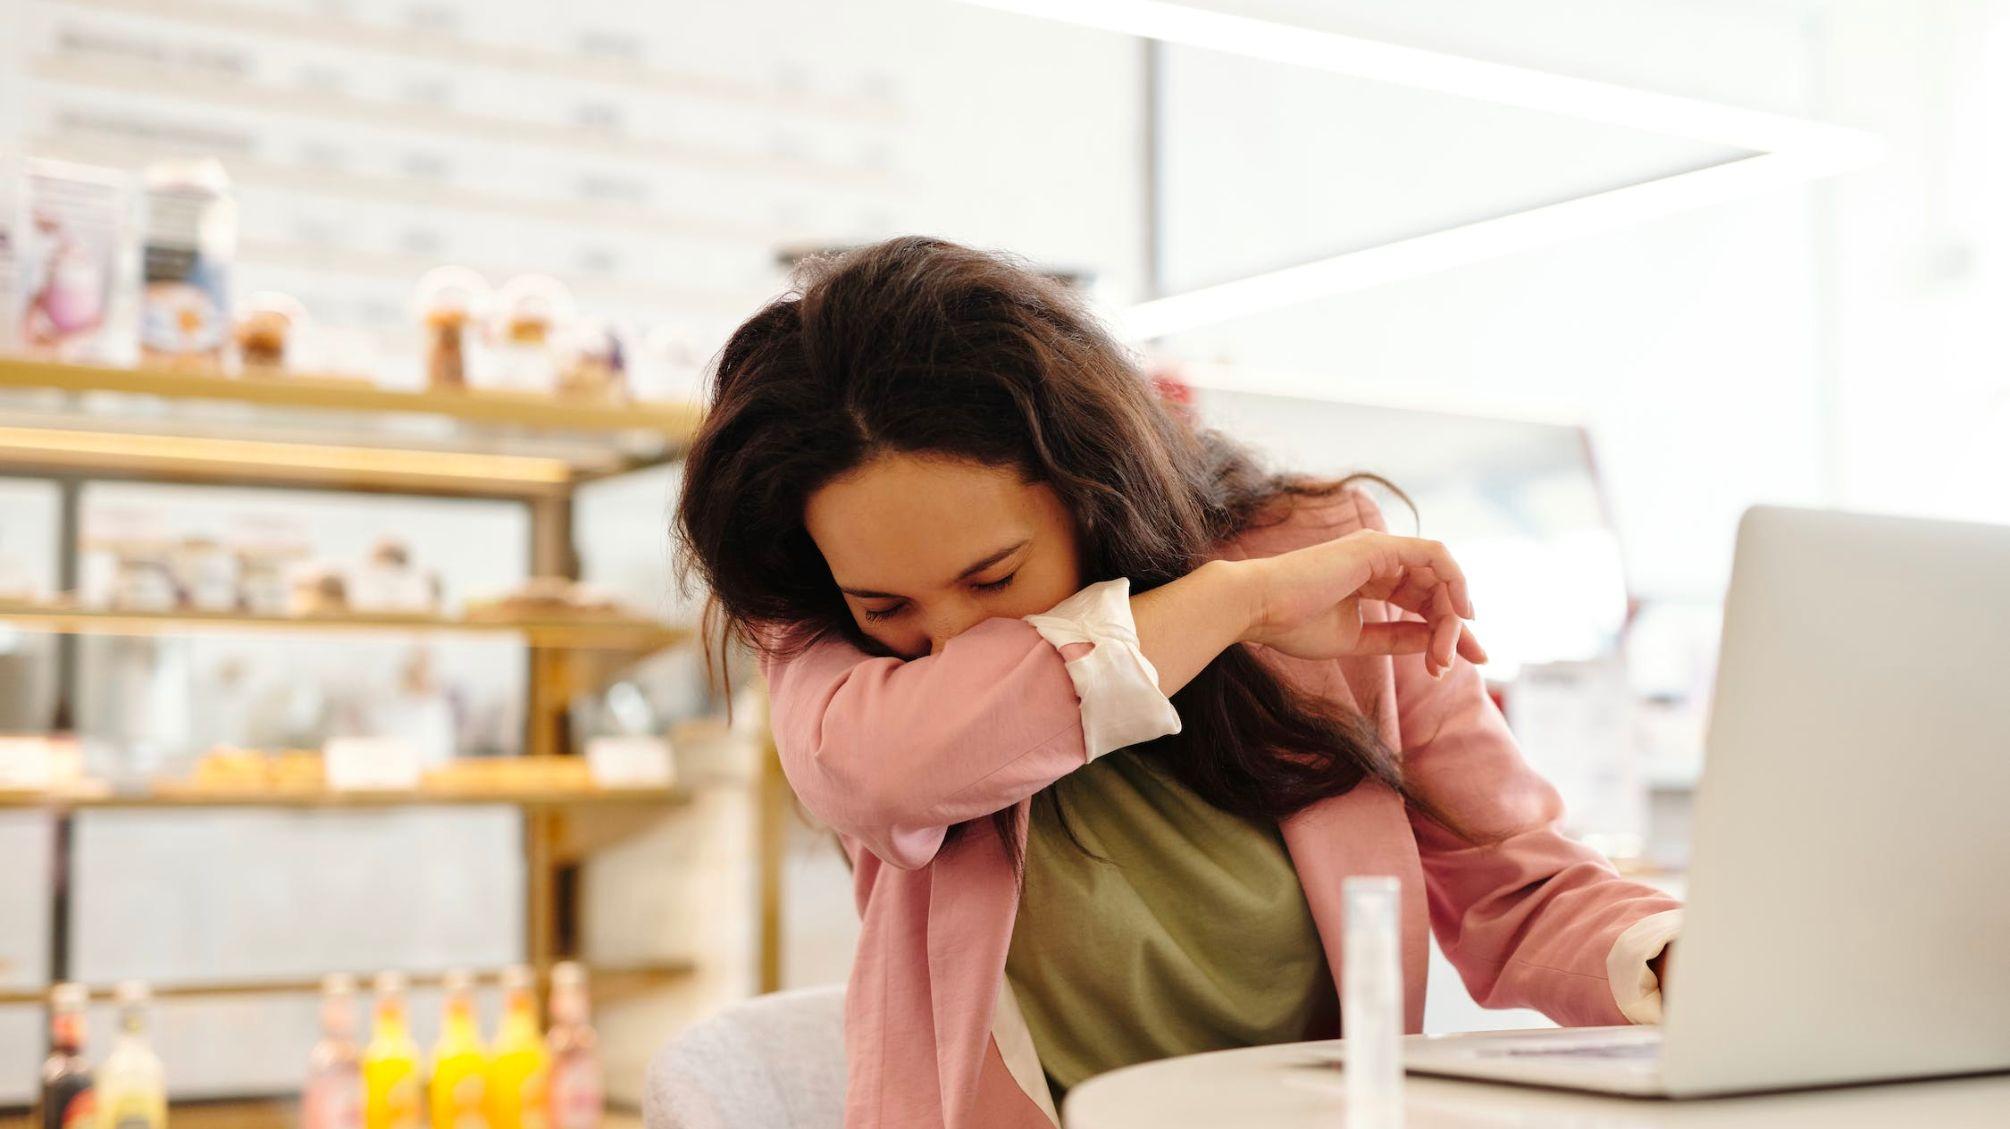 Das Bild zeigt eine Frau mit braunen Haaren am Arbeitsplatz vor ihrem Laptop, die in ihren Ellenbogen niest, weil sie krank zur Arbeit gekommen ist.